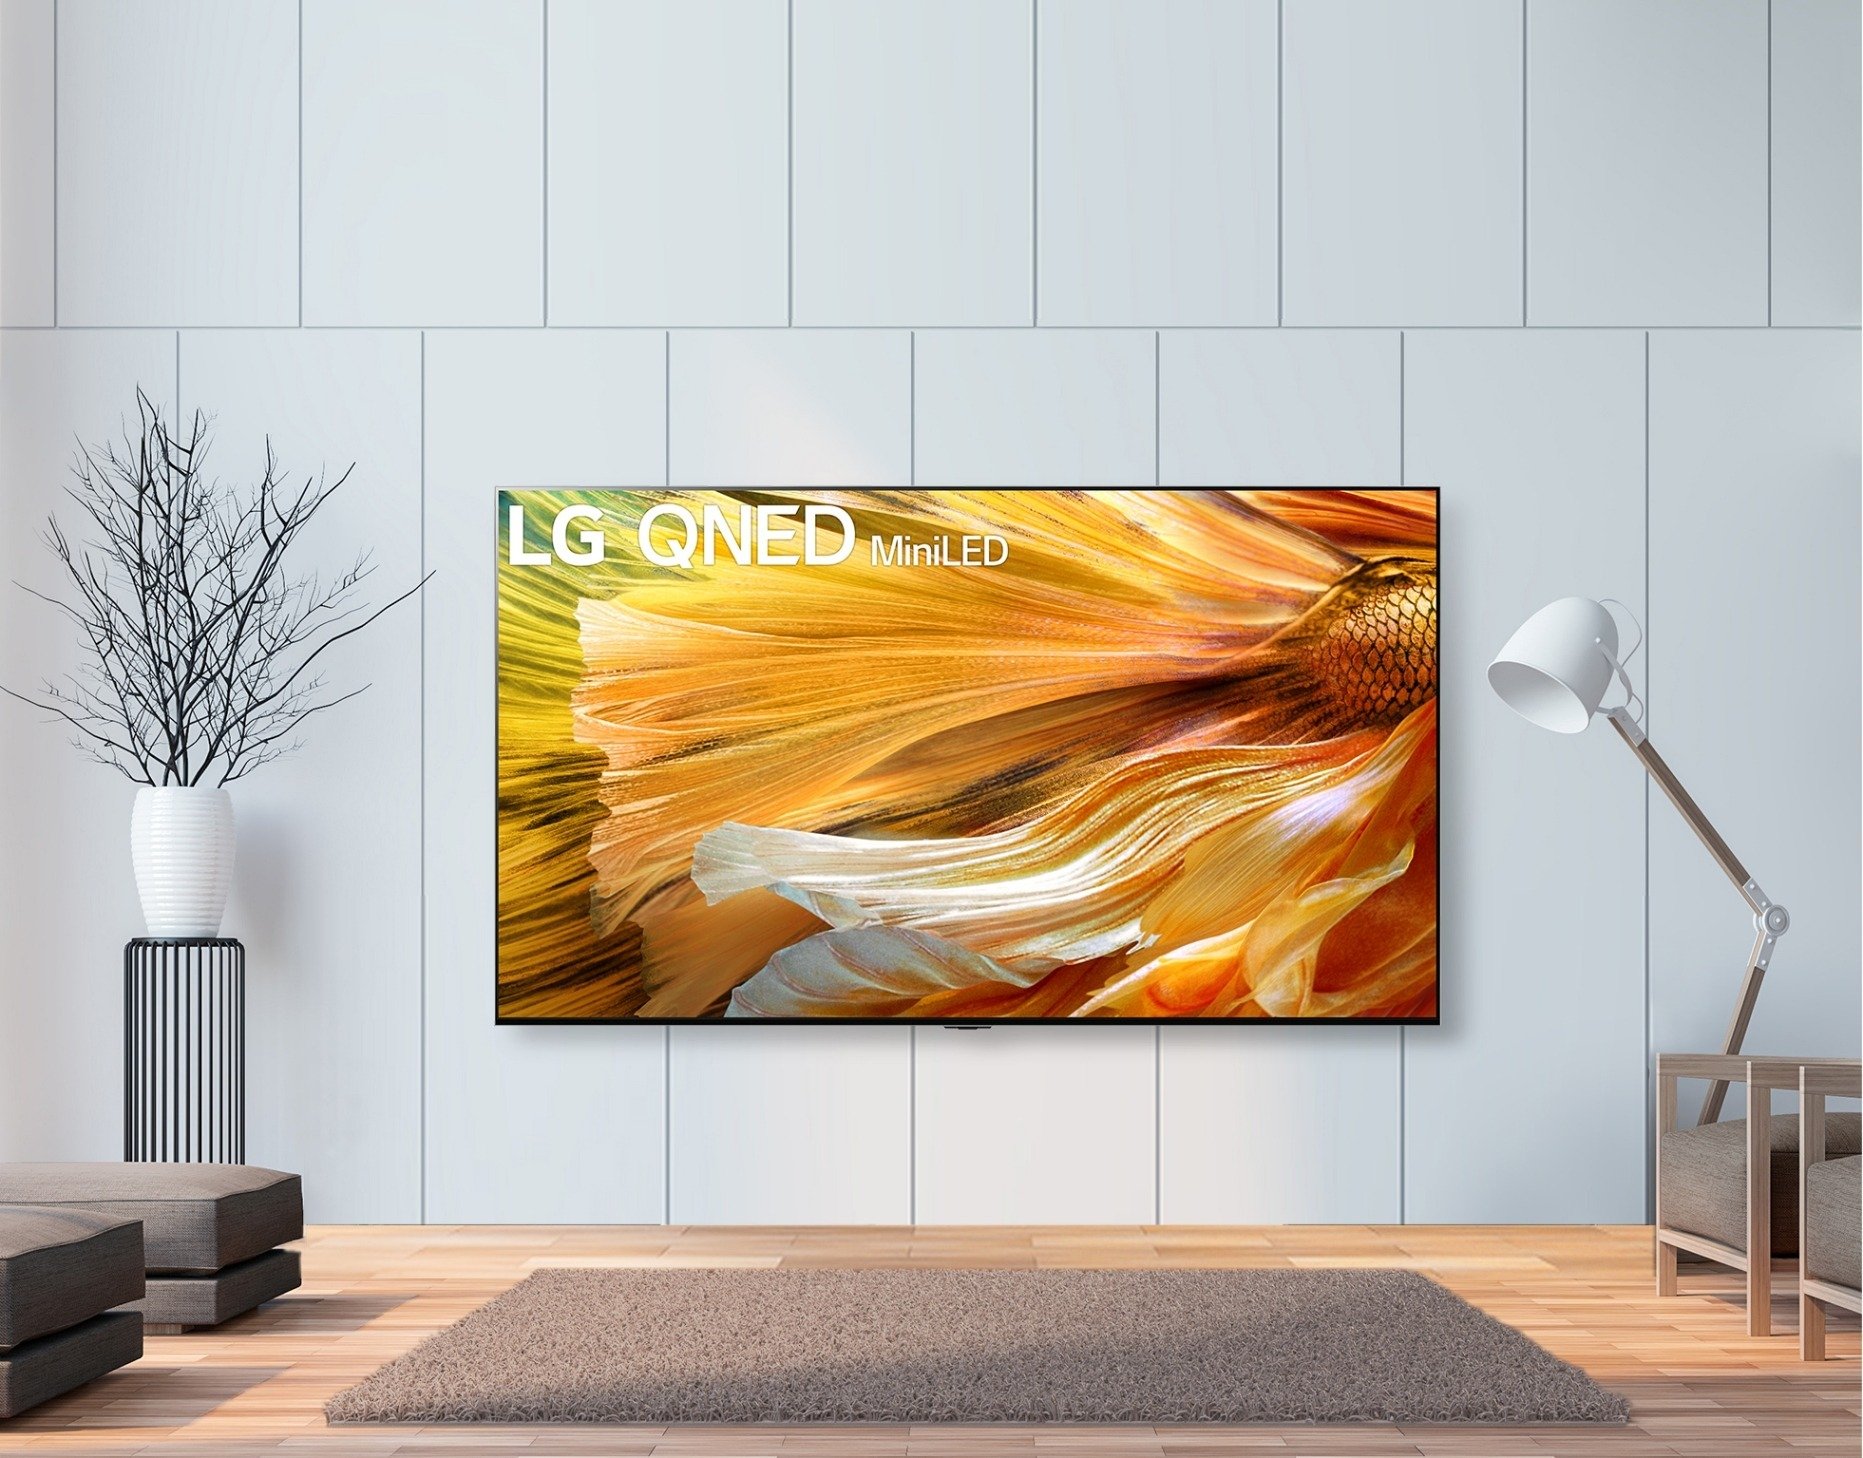 Ruszyła przedsprzedaż premierowych telewizorów LG QNED MiniLED – Nowa jakość obrazu na ekranie LCD